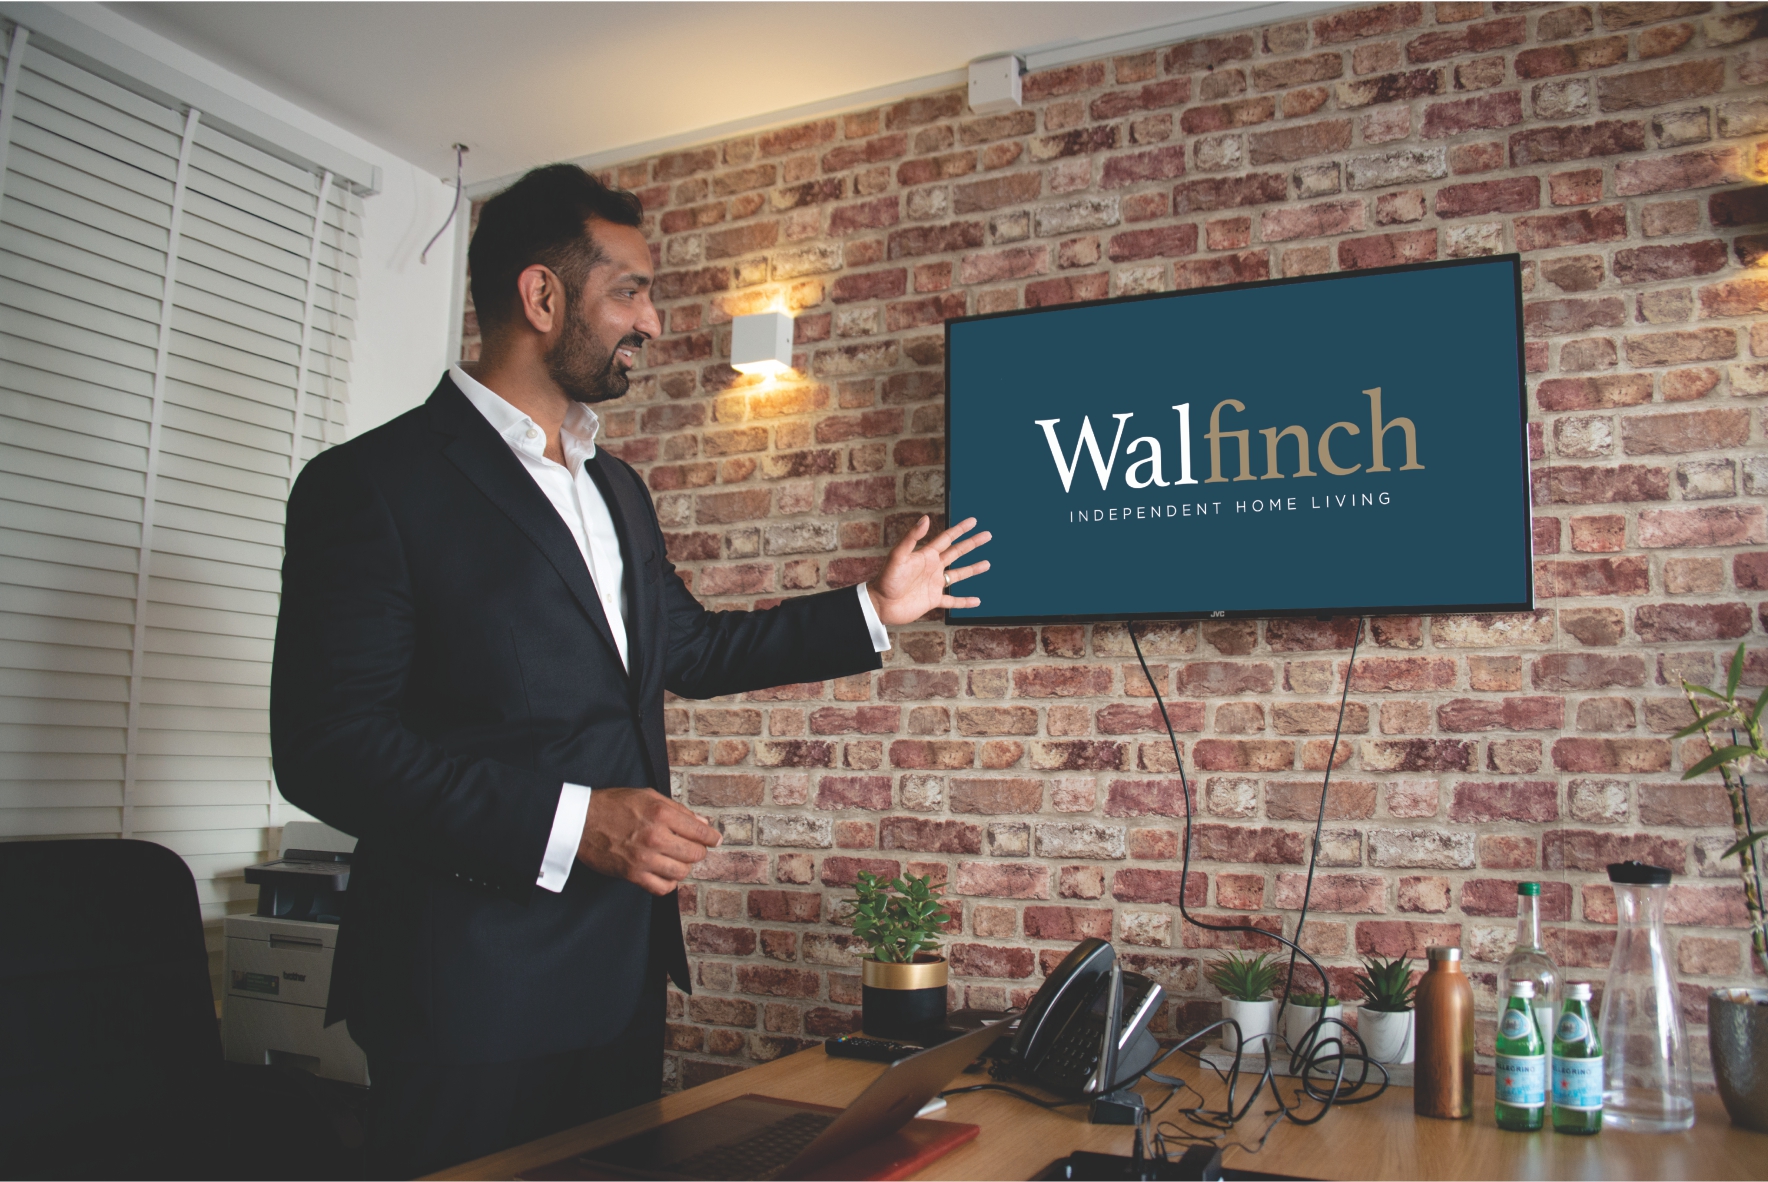 Presentation from Walfinch